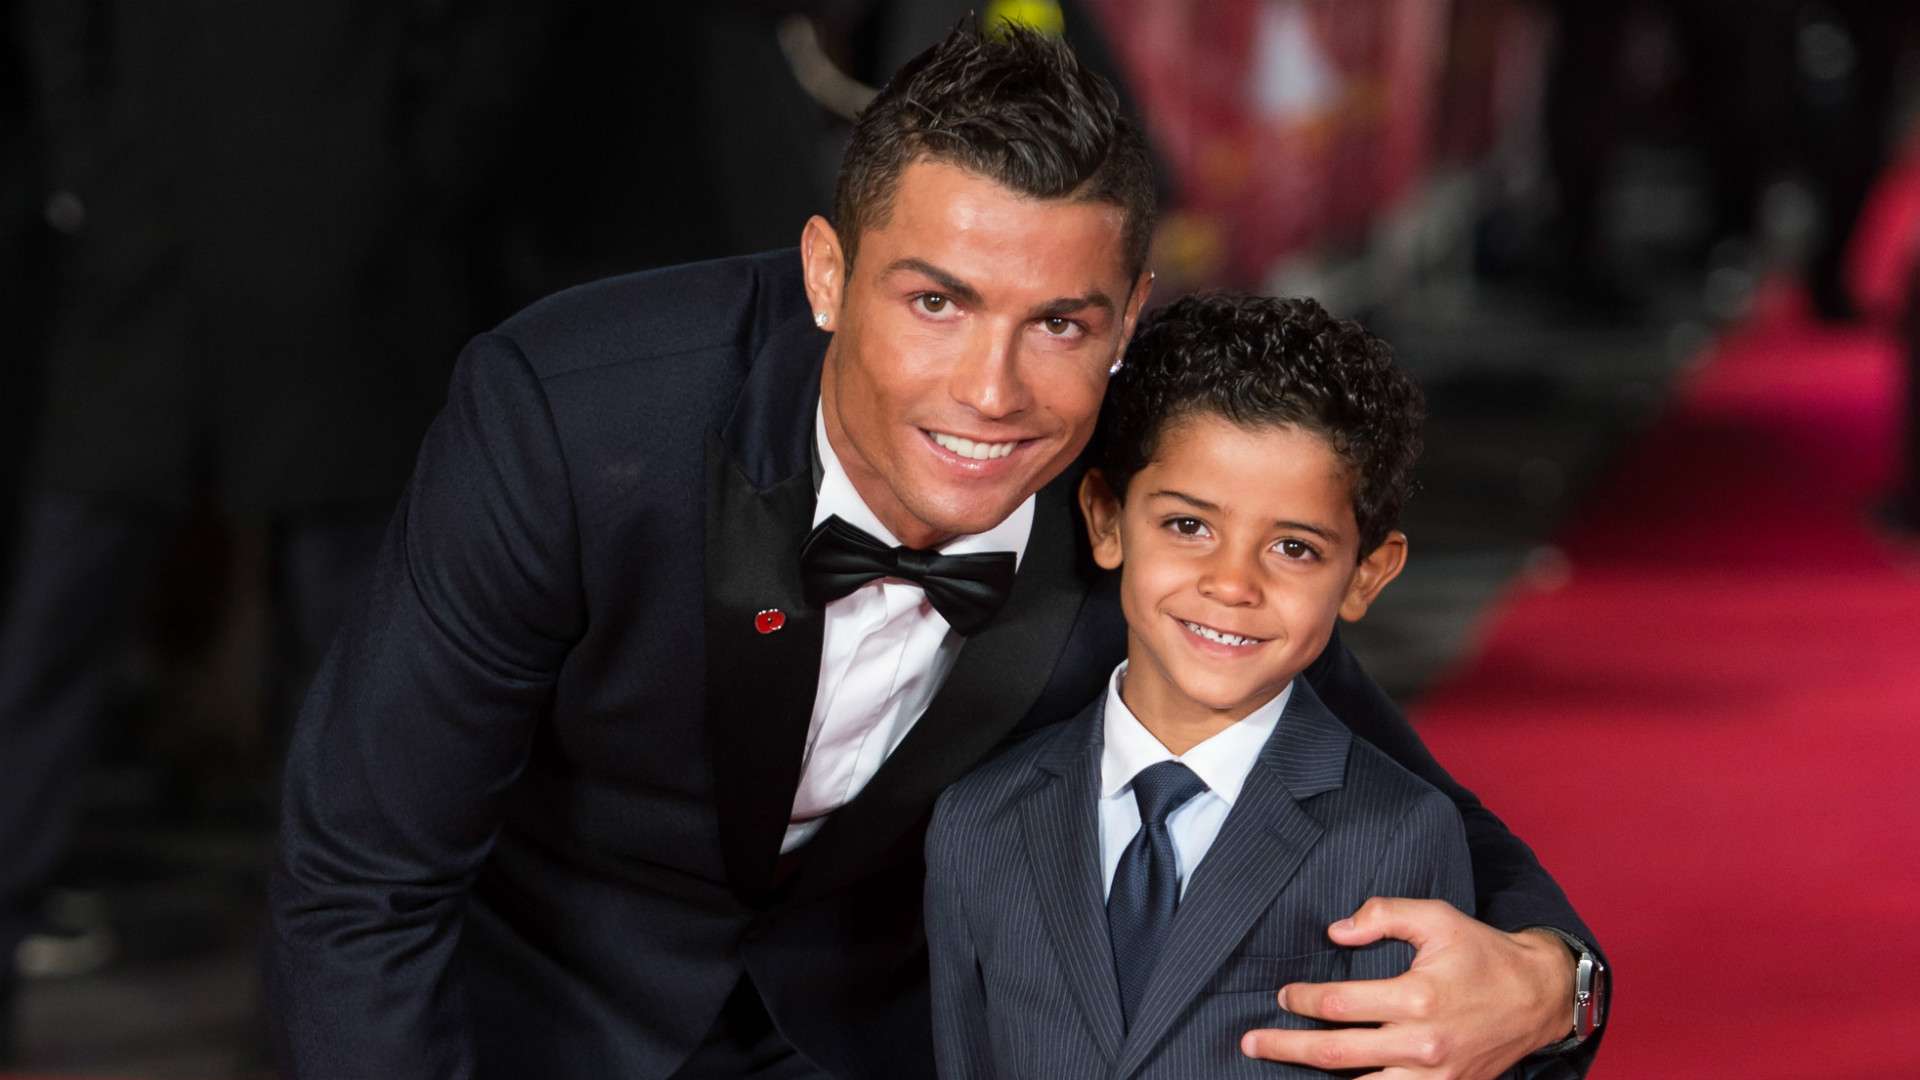 Cristiano Ronaldo and son movie premiere